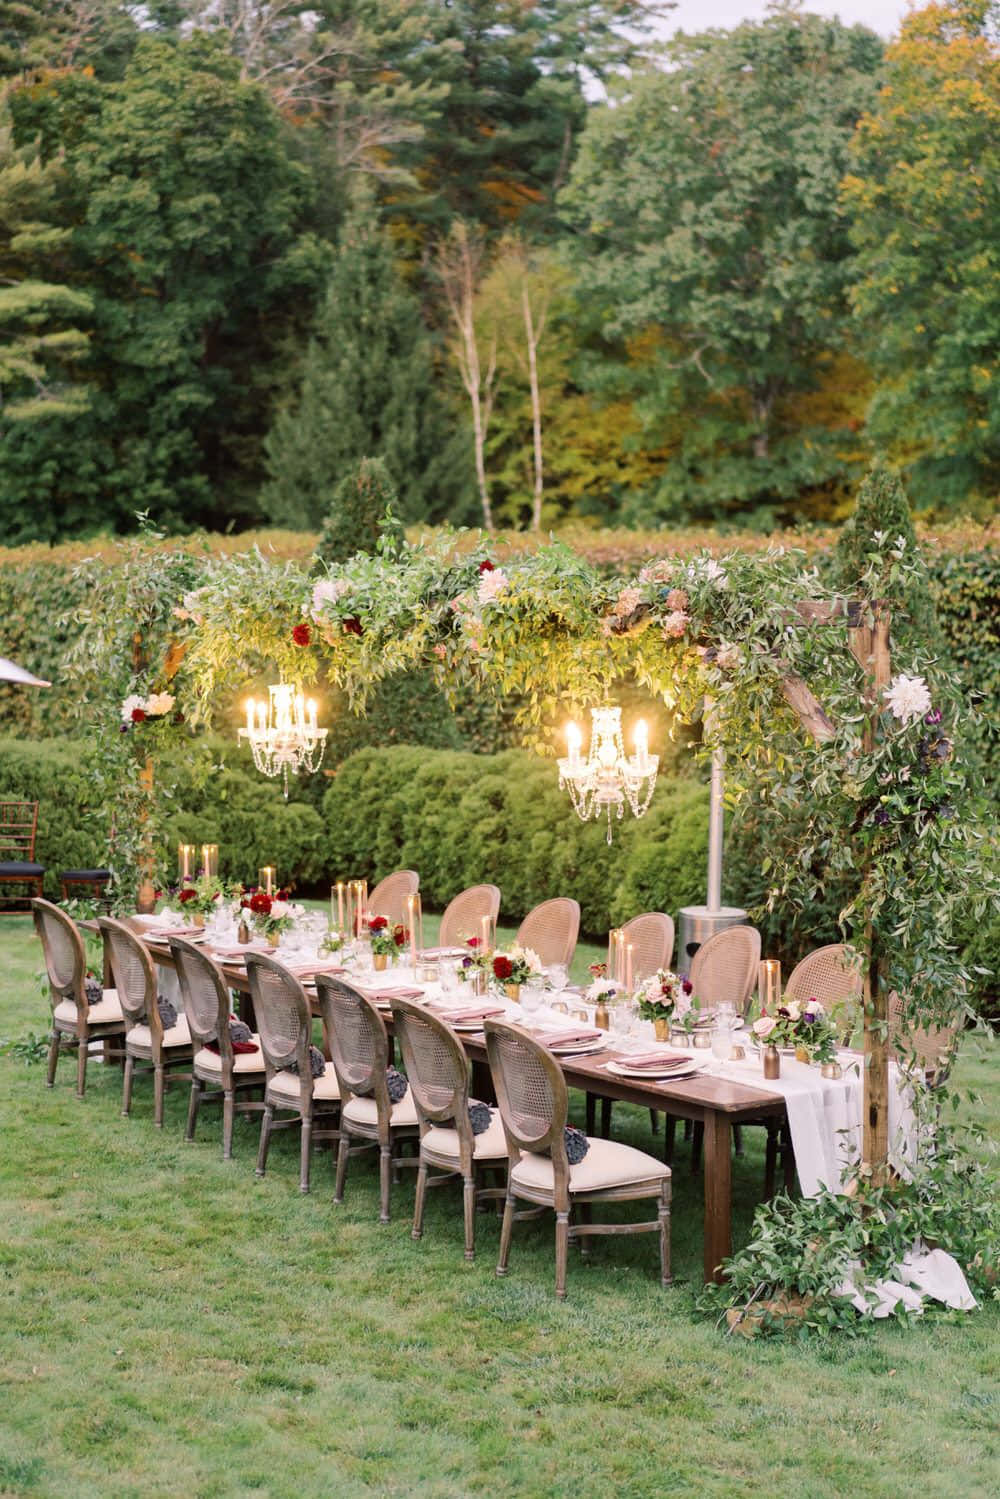 Einlanger Tisch Aufgestellt In Einem Grünen Garten